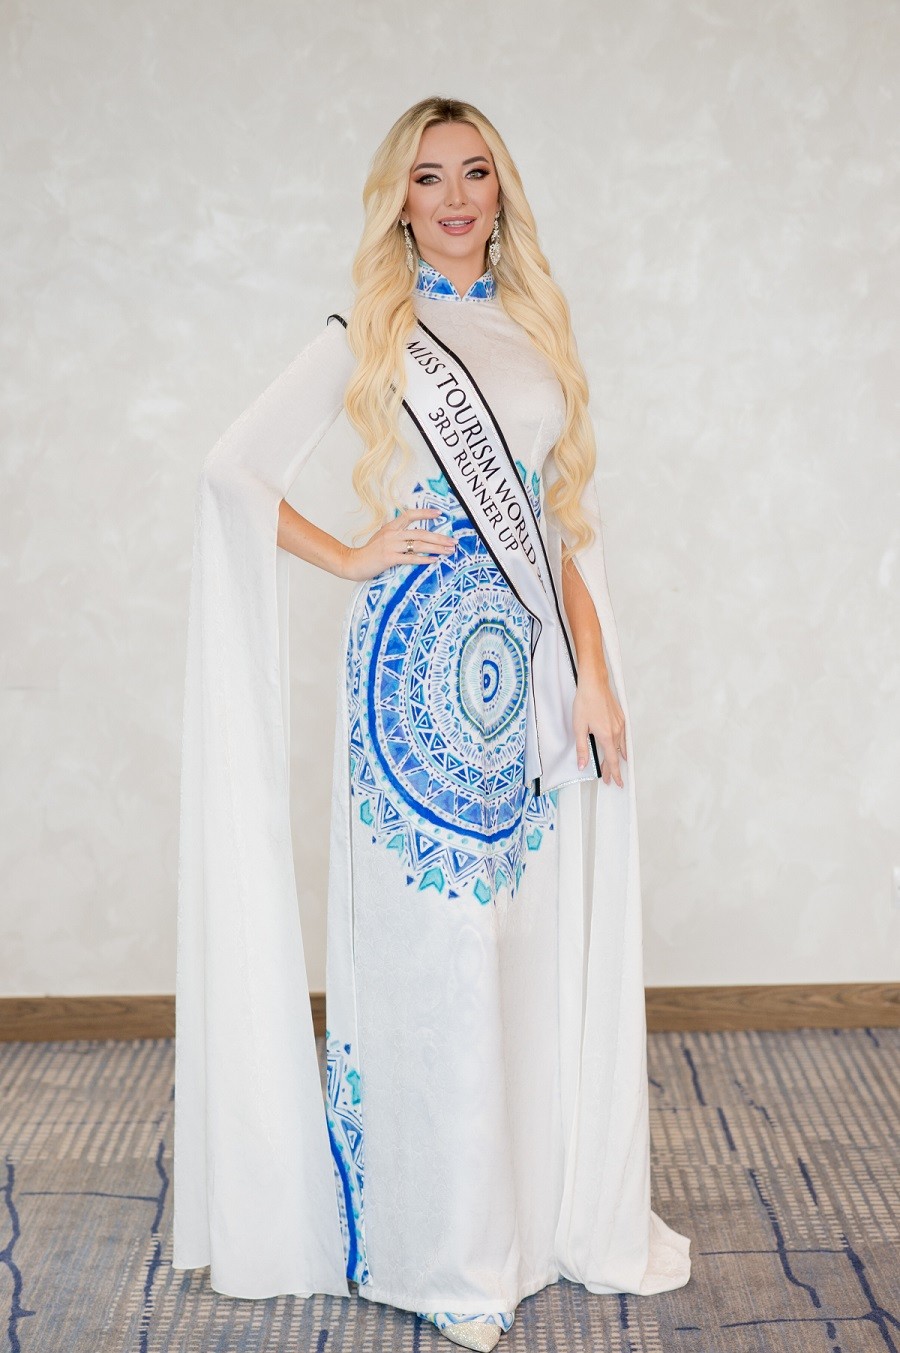 Hoa hậu Du lịch Thế giới 2022 và các Á hậu diện áo dài gấm được tặng